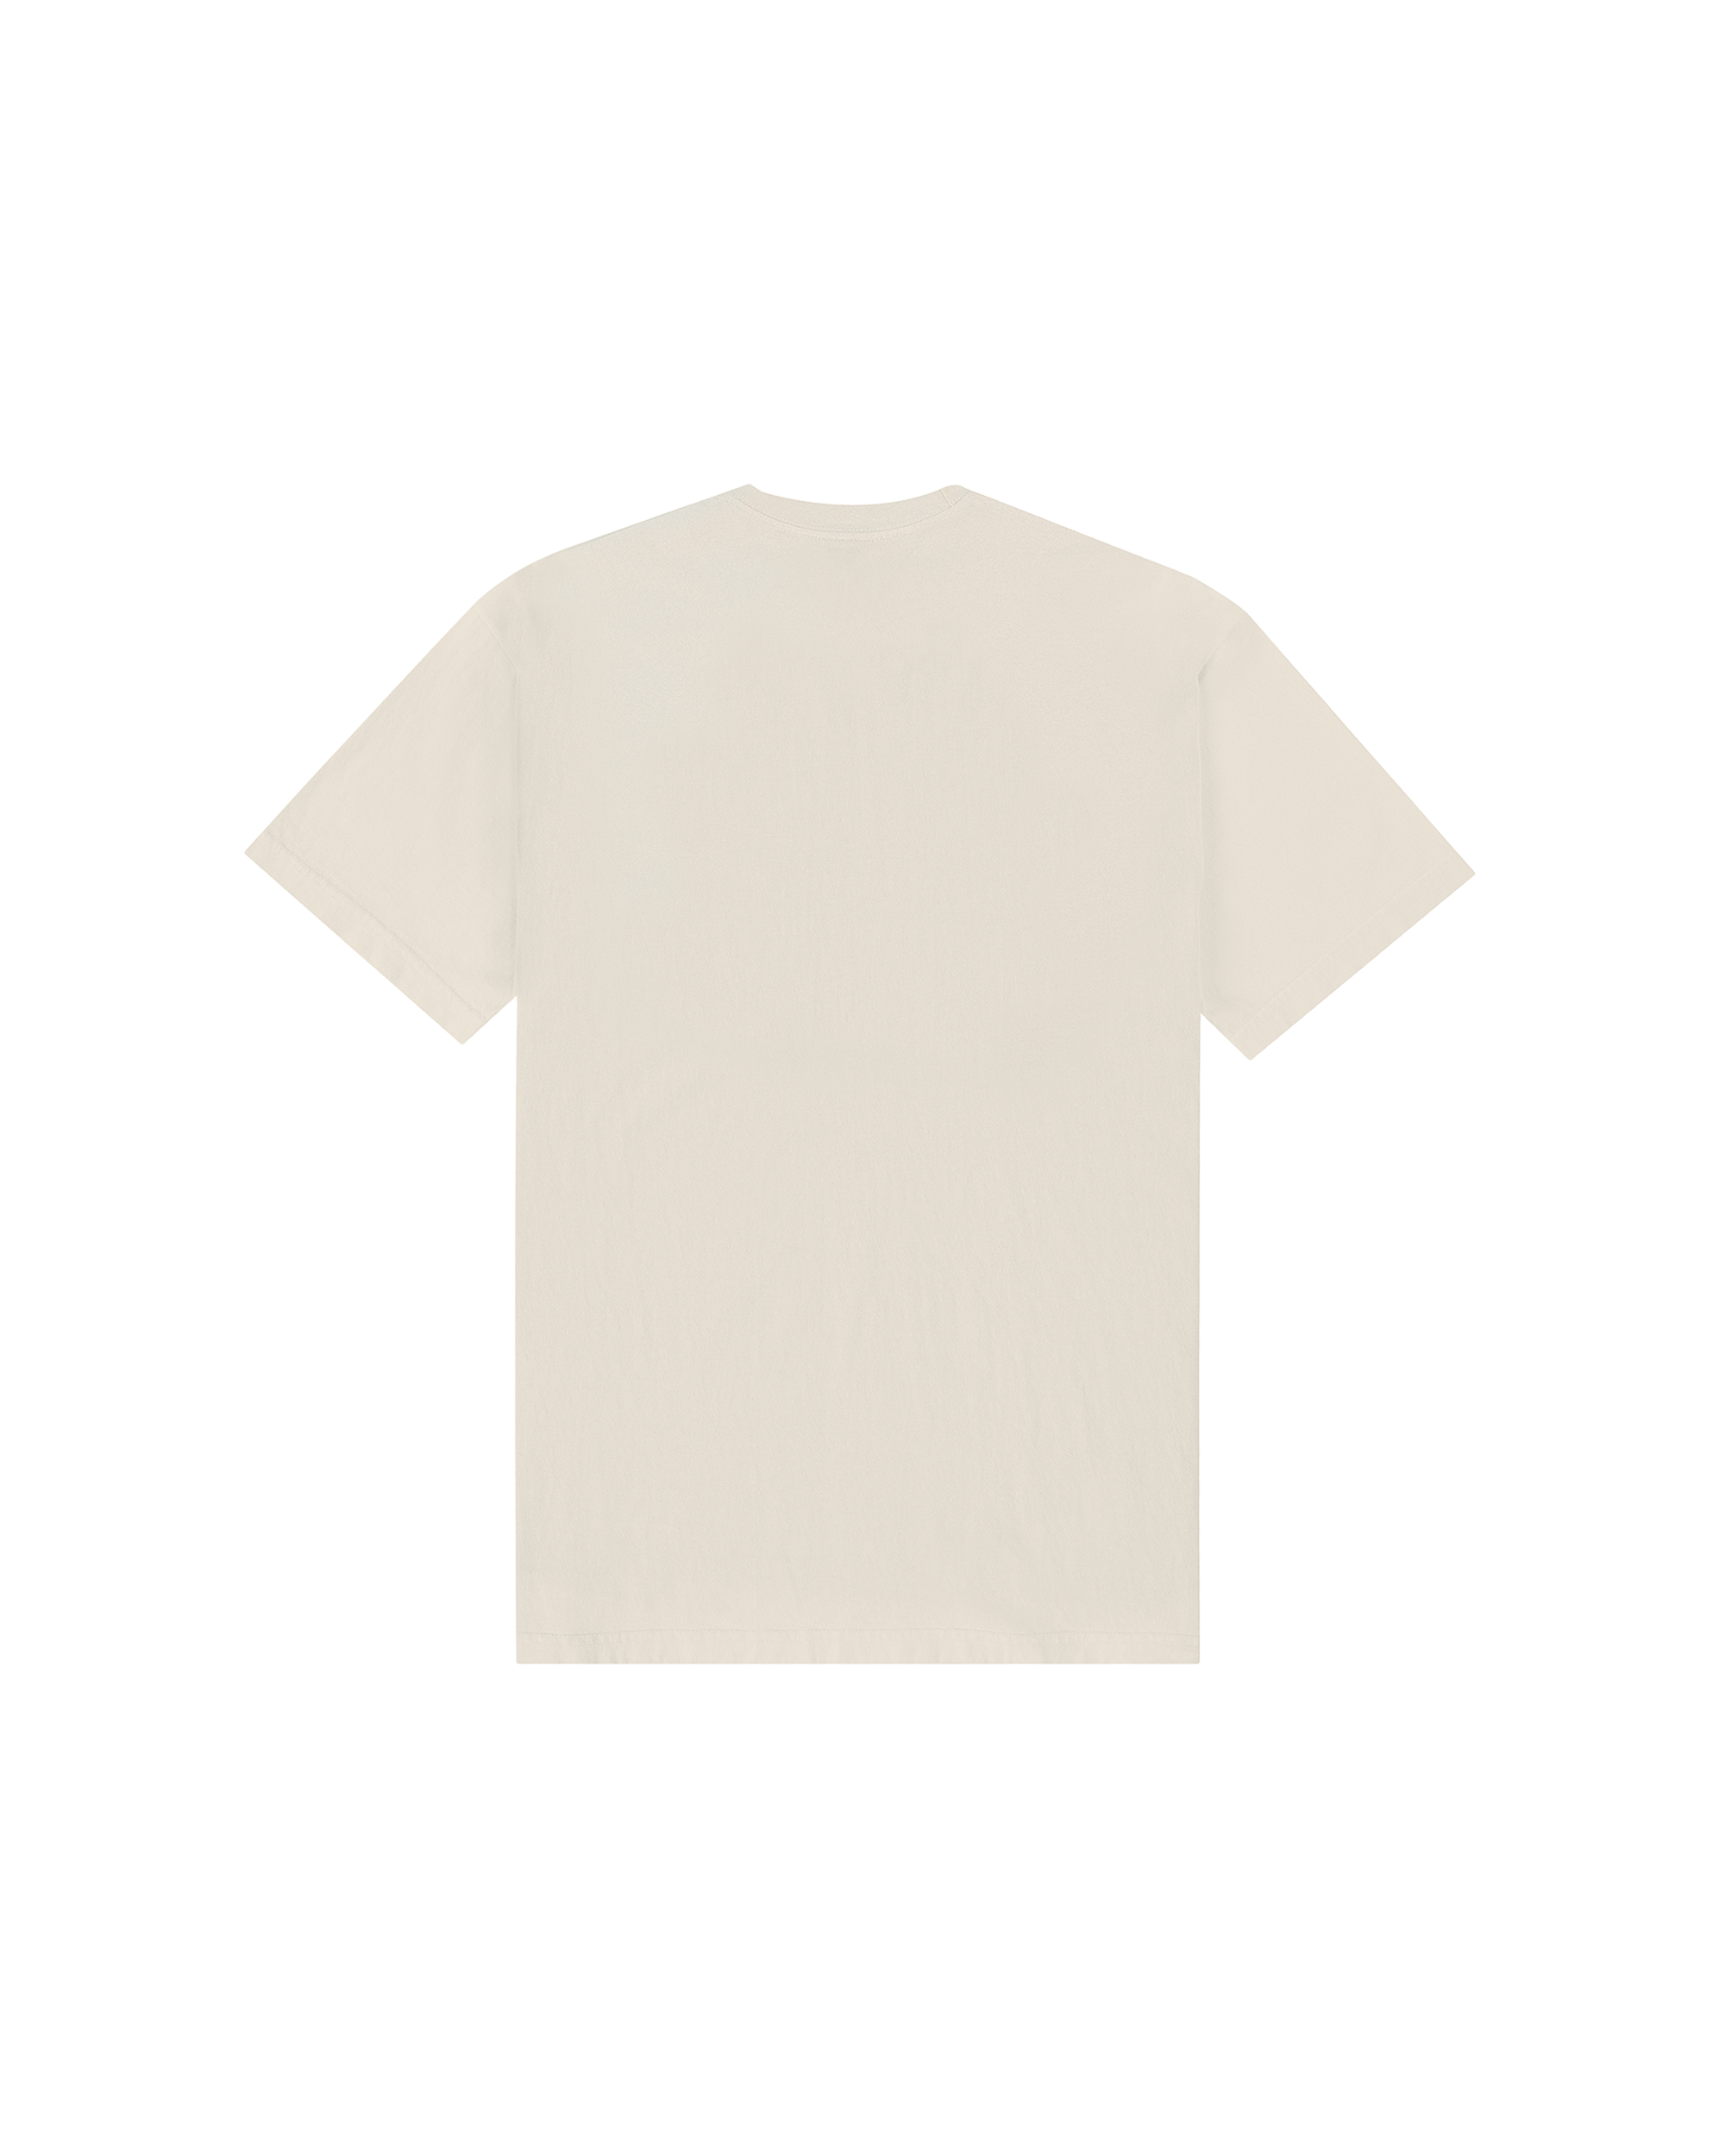 H&L Posse T-shirt - Crème